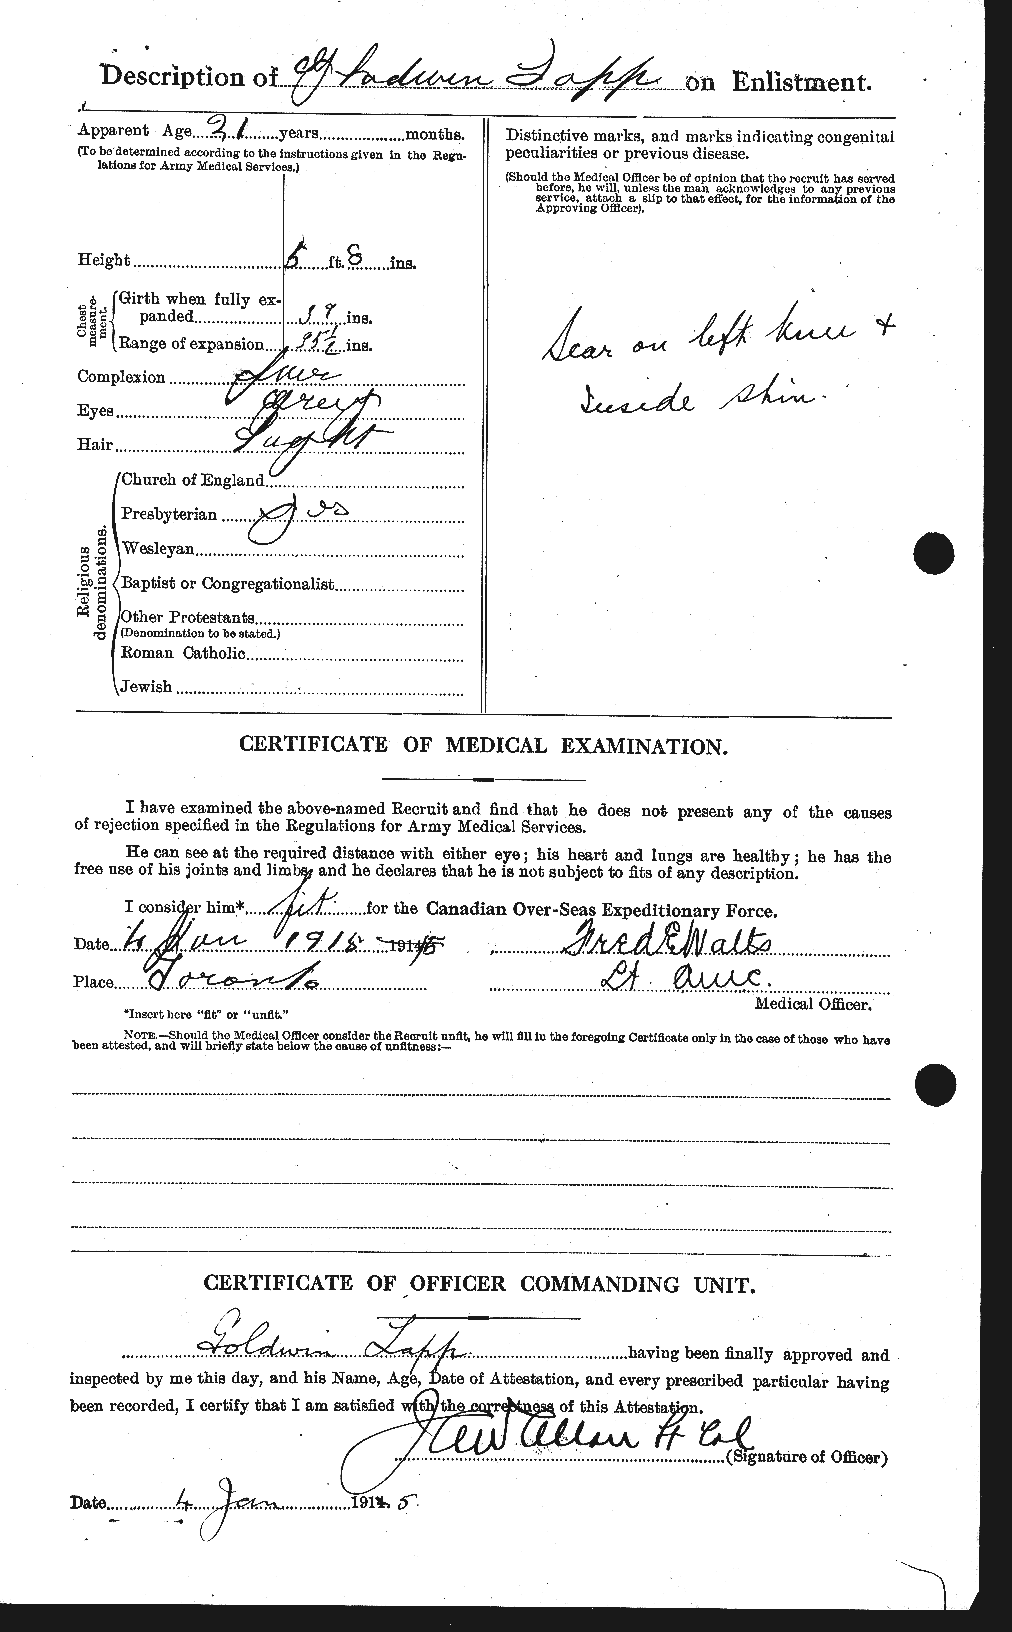 Dossiers du Personnel de la Première Guerre mondiale - CEC 447078b